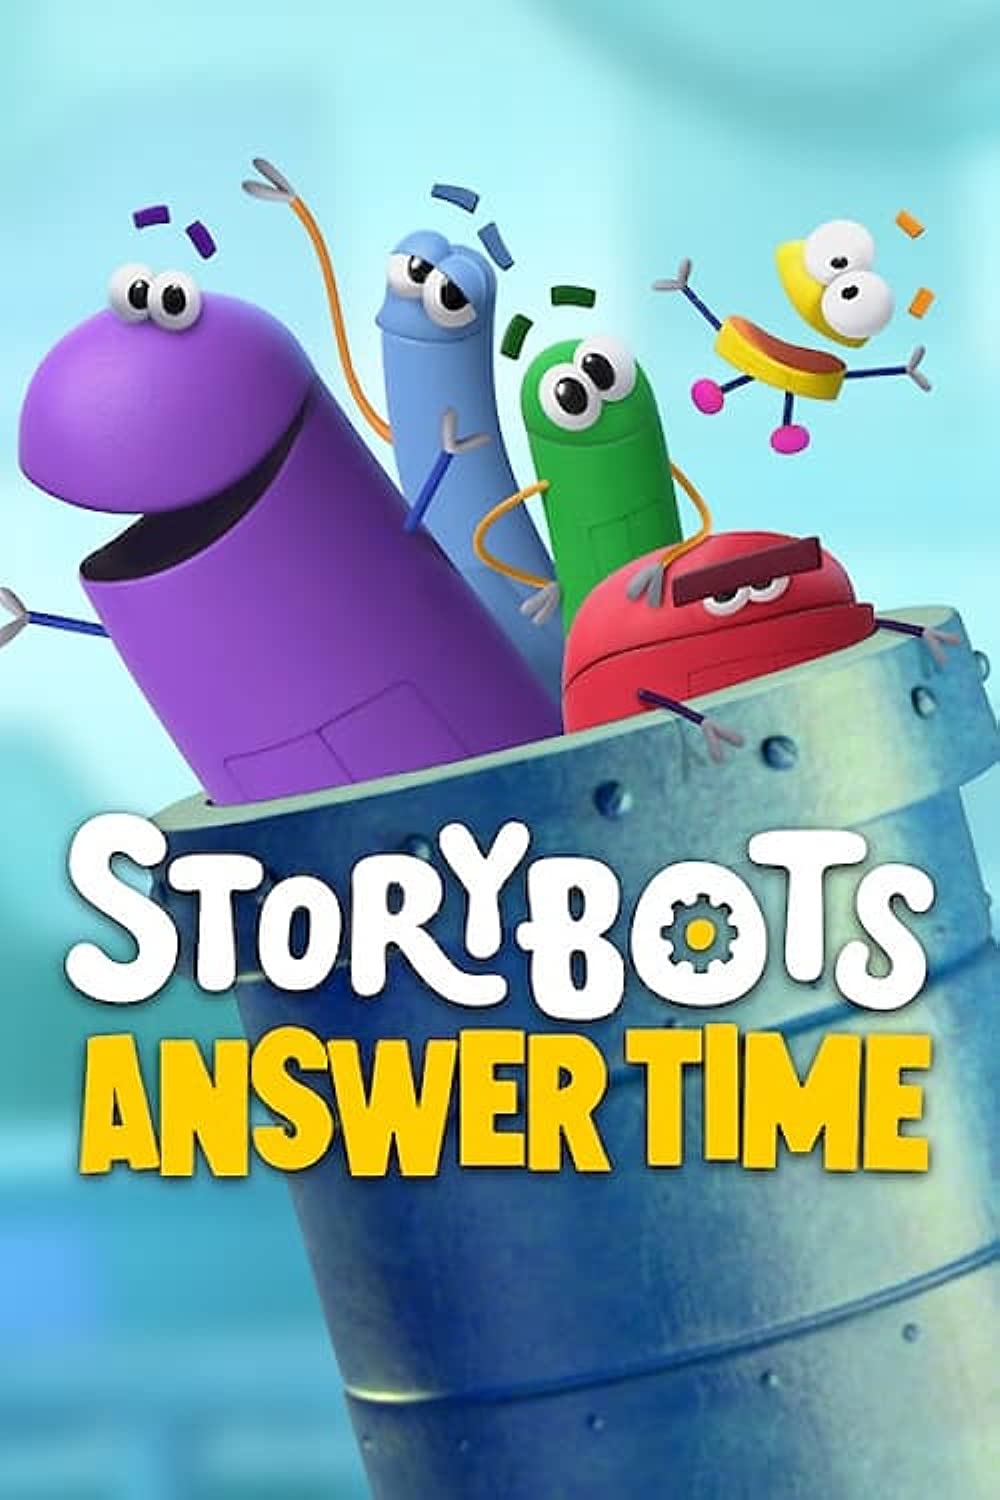 Storybots: Answer Time | StoryBots Wiki | Fandom